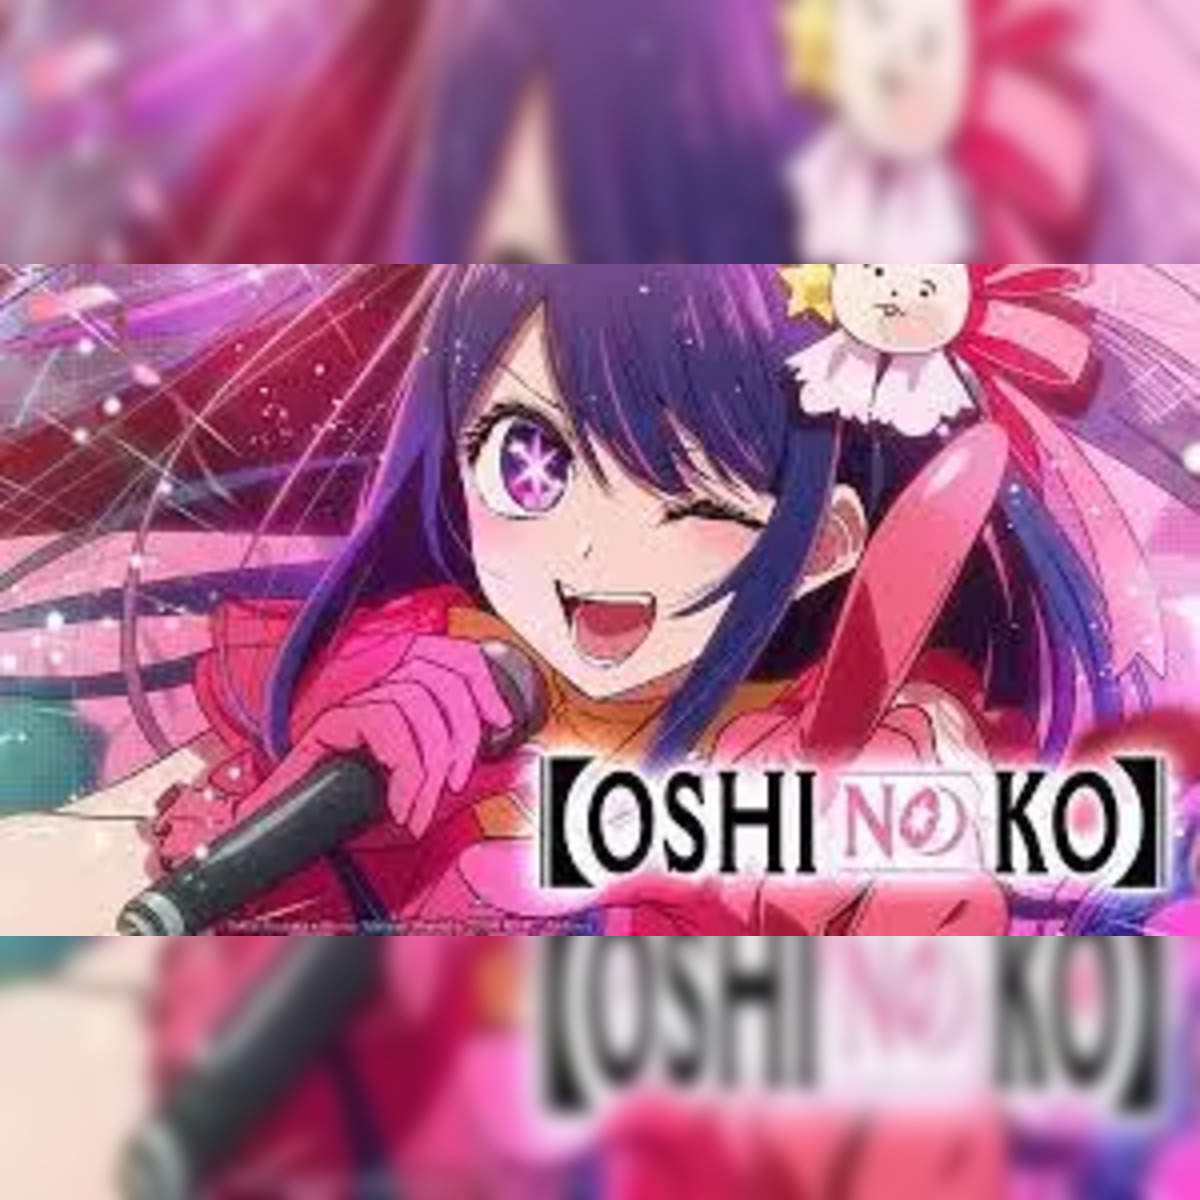 Oshi No ko Episode 4 Time: Oshi no Ko Episode 4: Latest episode to